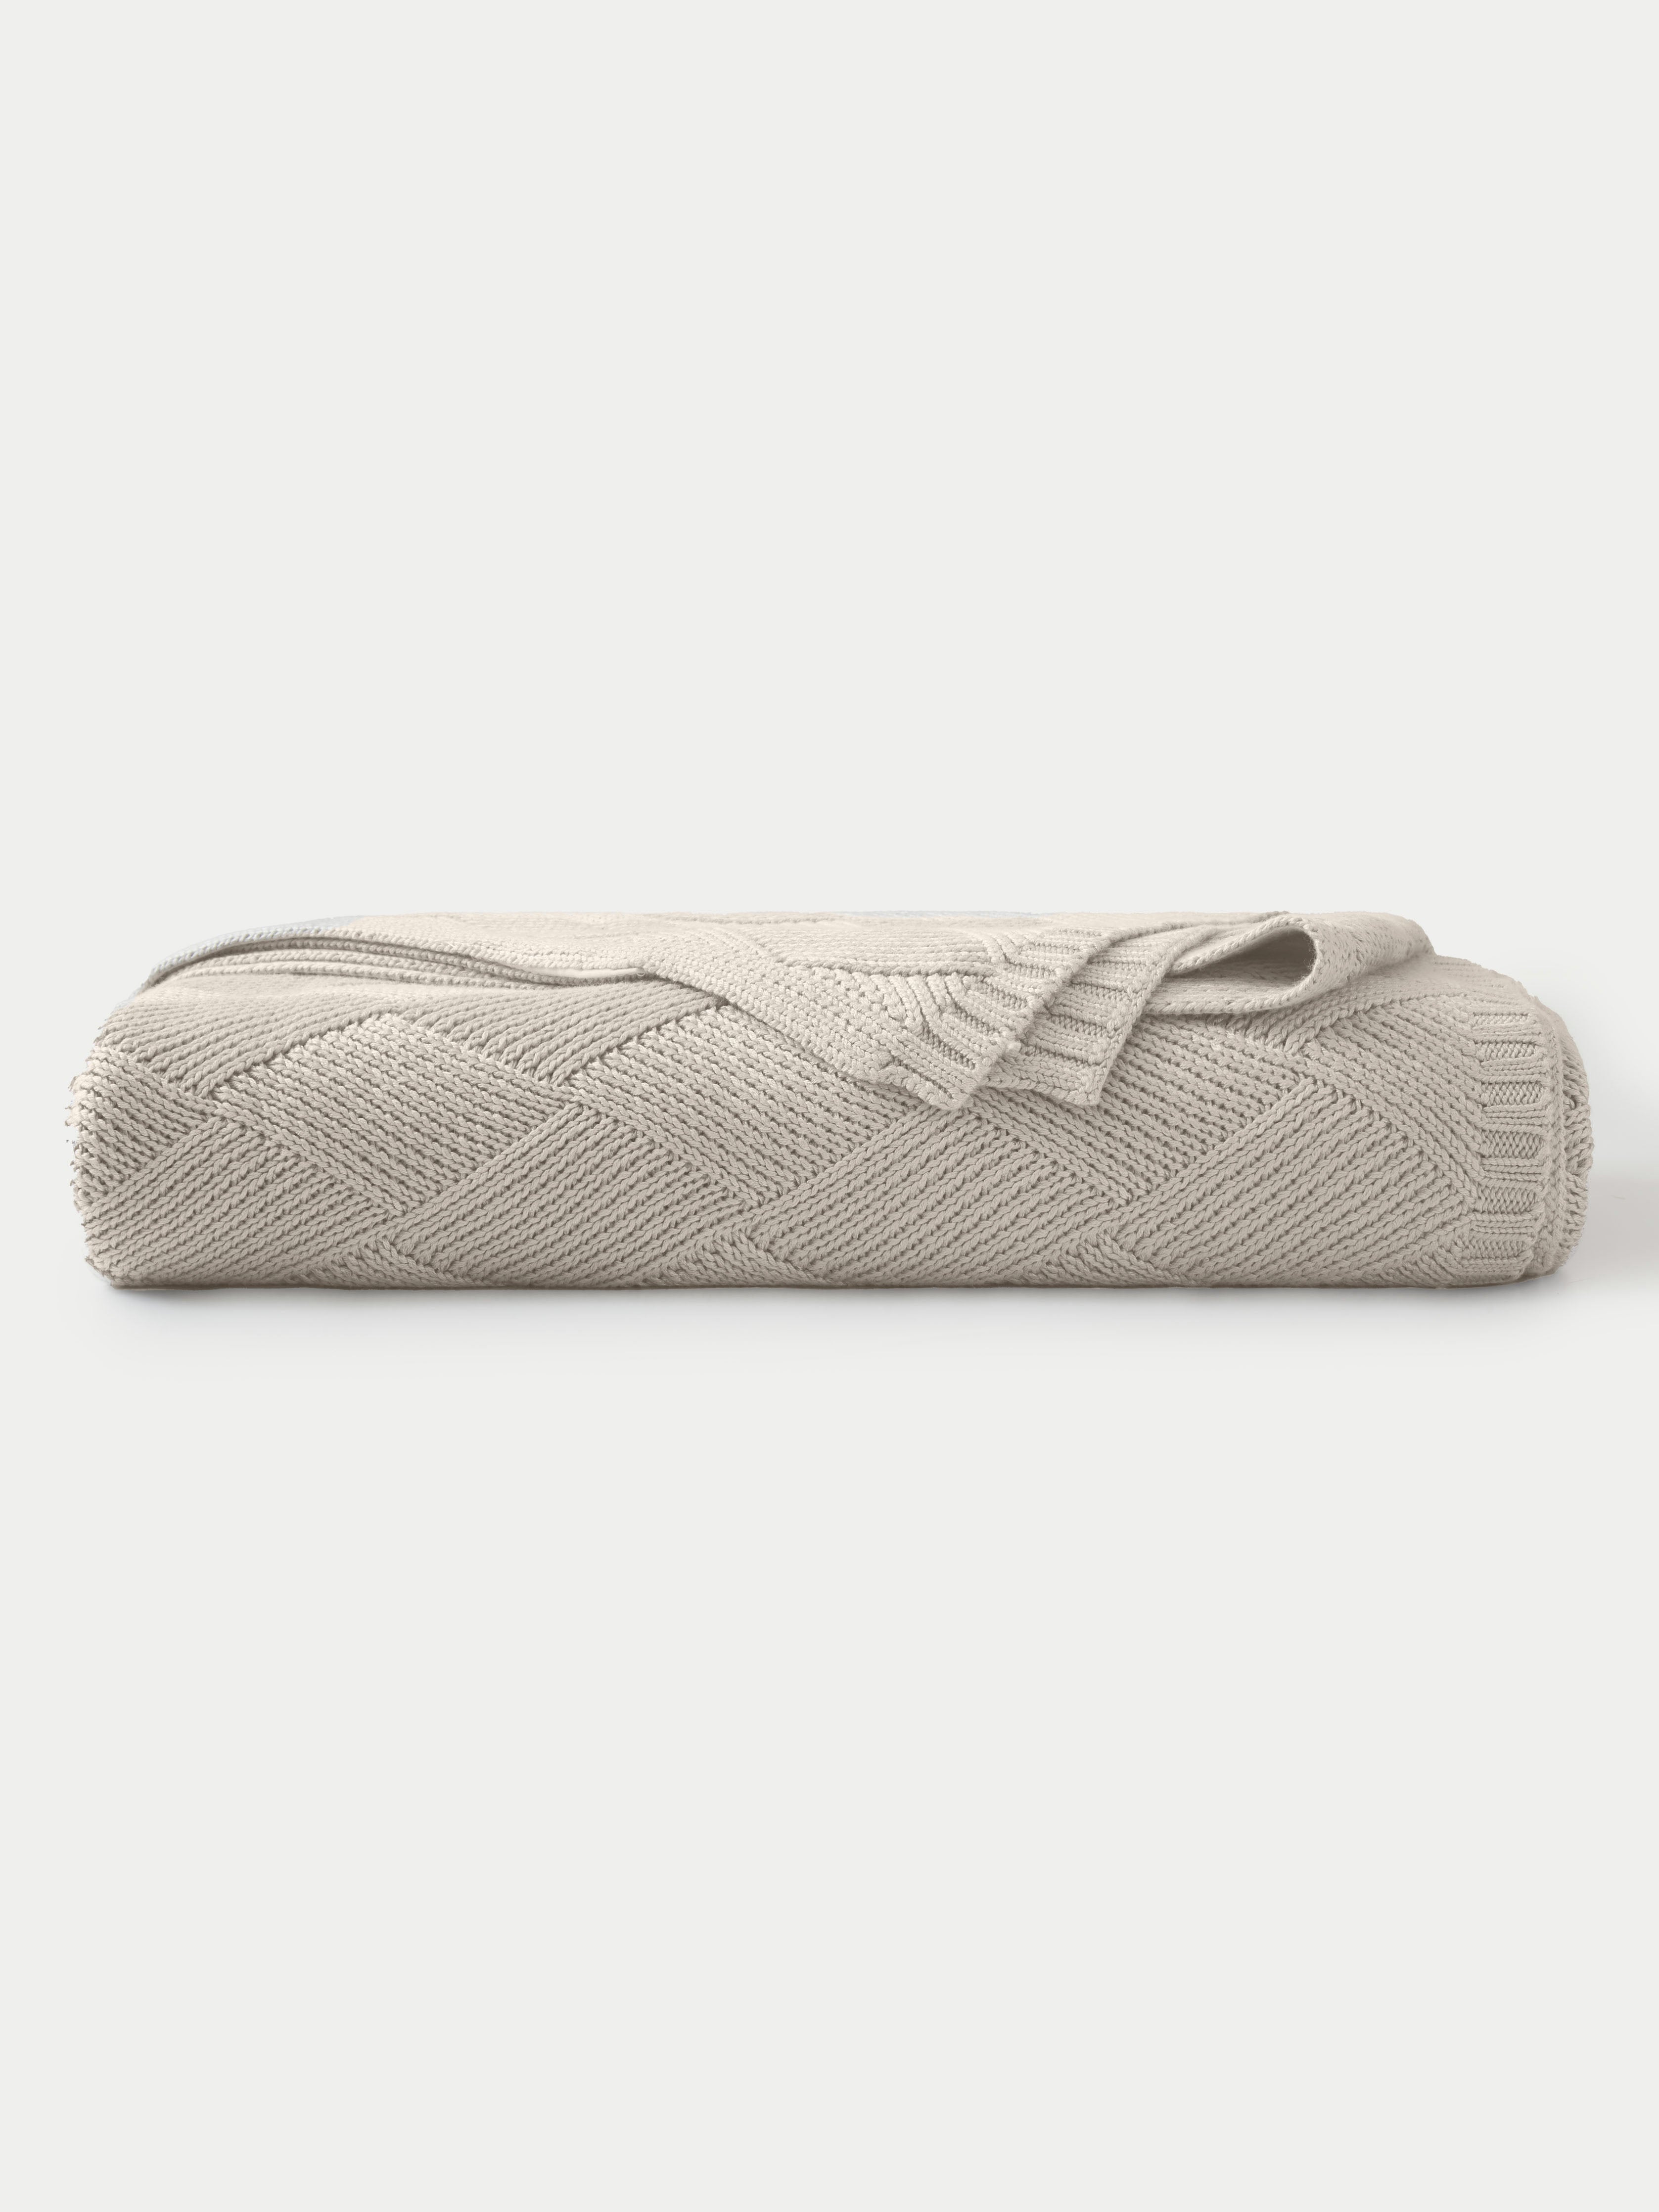 Beige Diamond Knit Blanket neatly folded. |Color:Beige